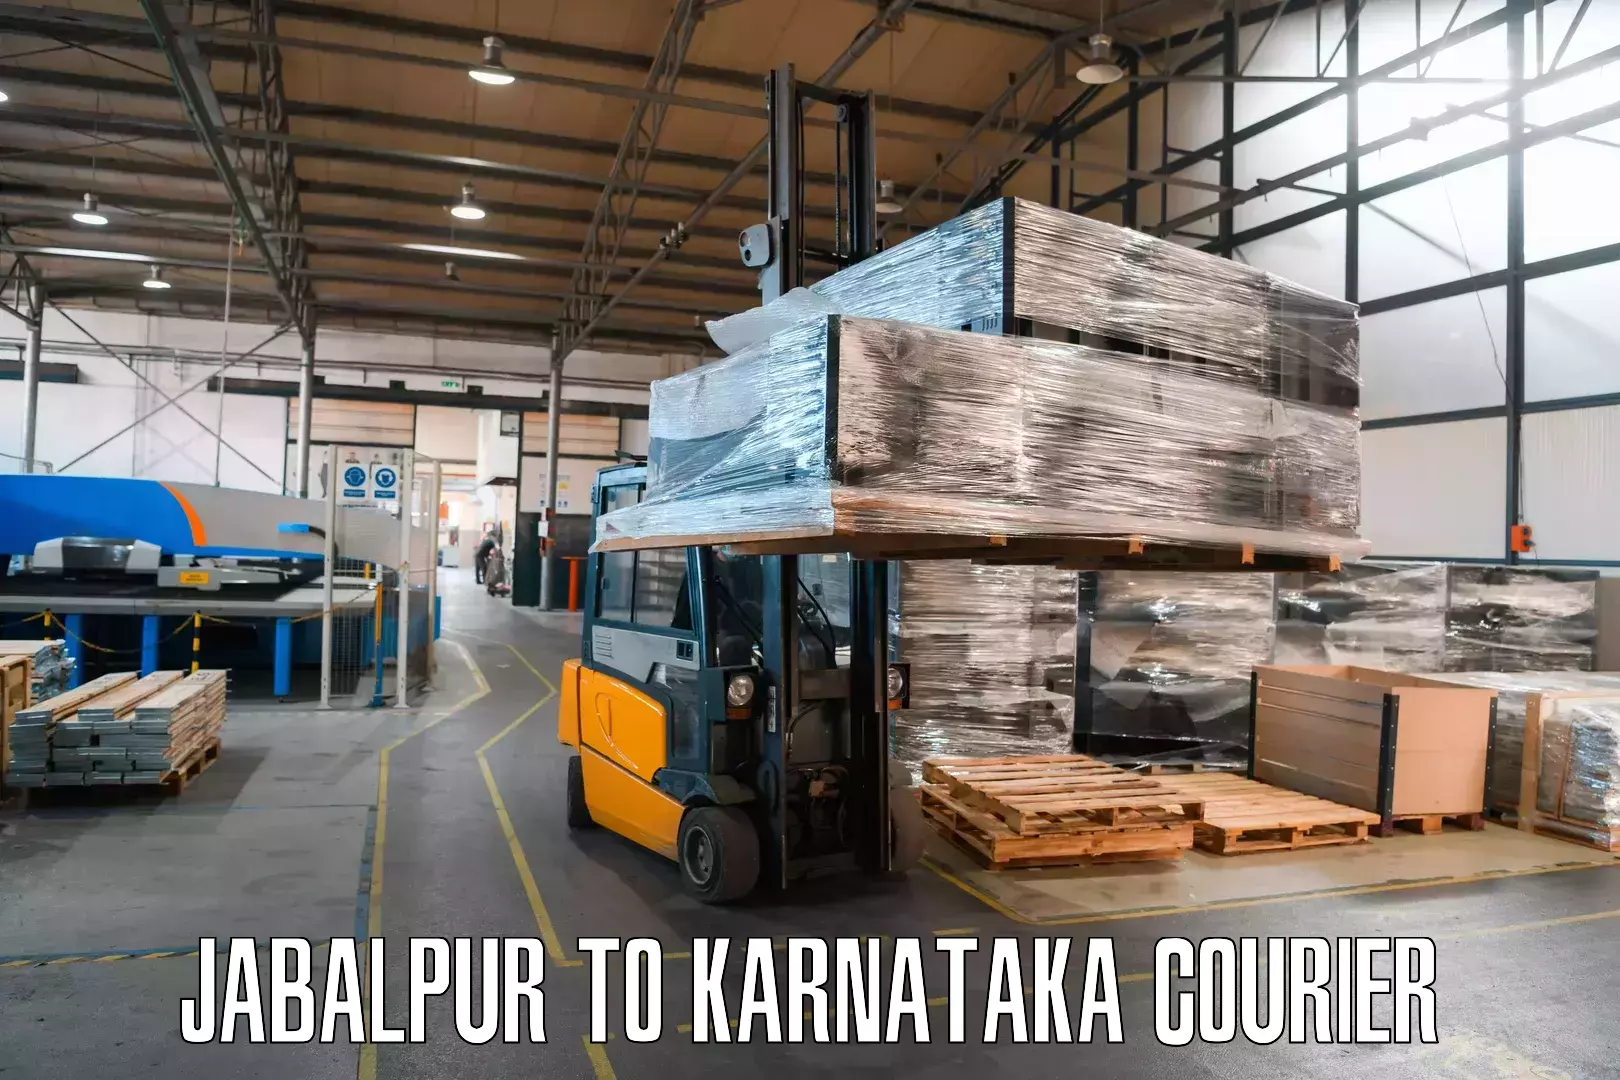 Next-day freight services Jabalpur to Kotturu